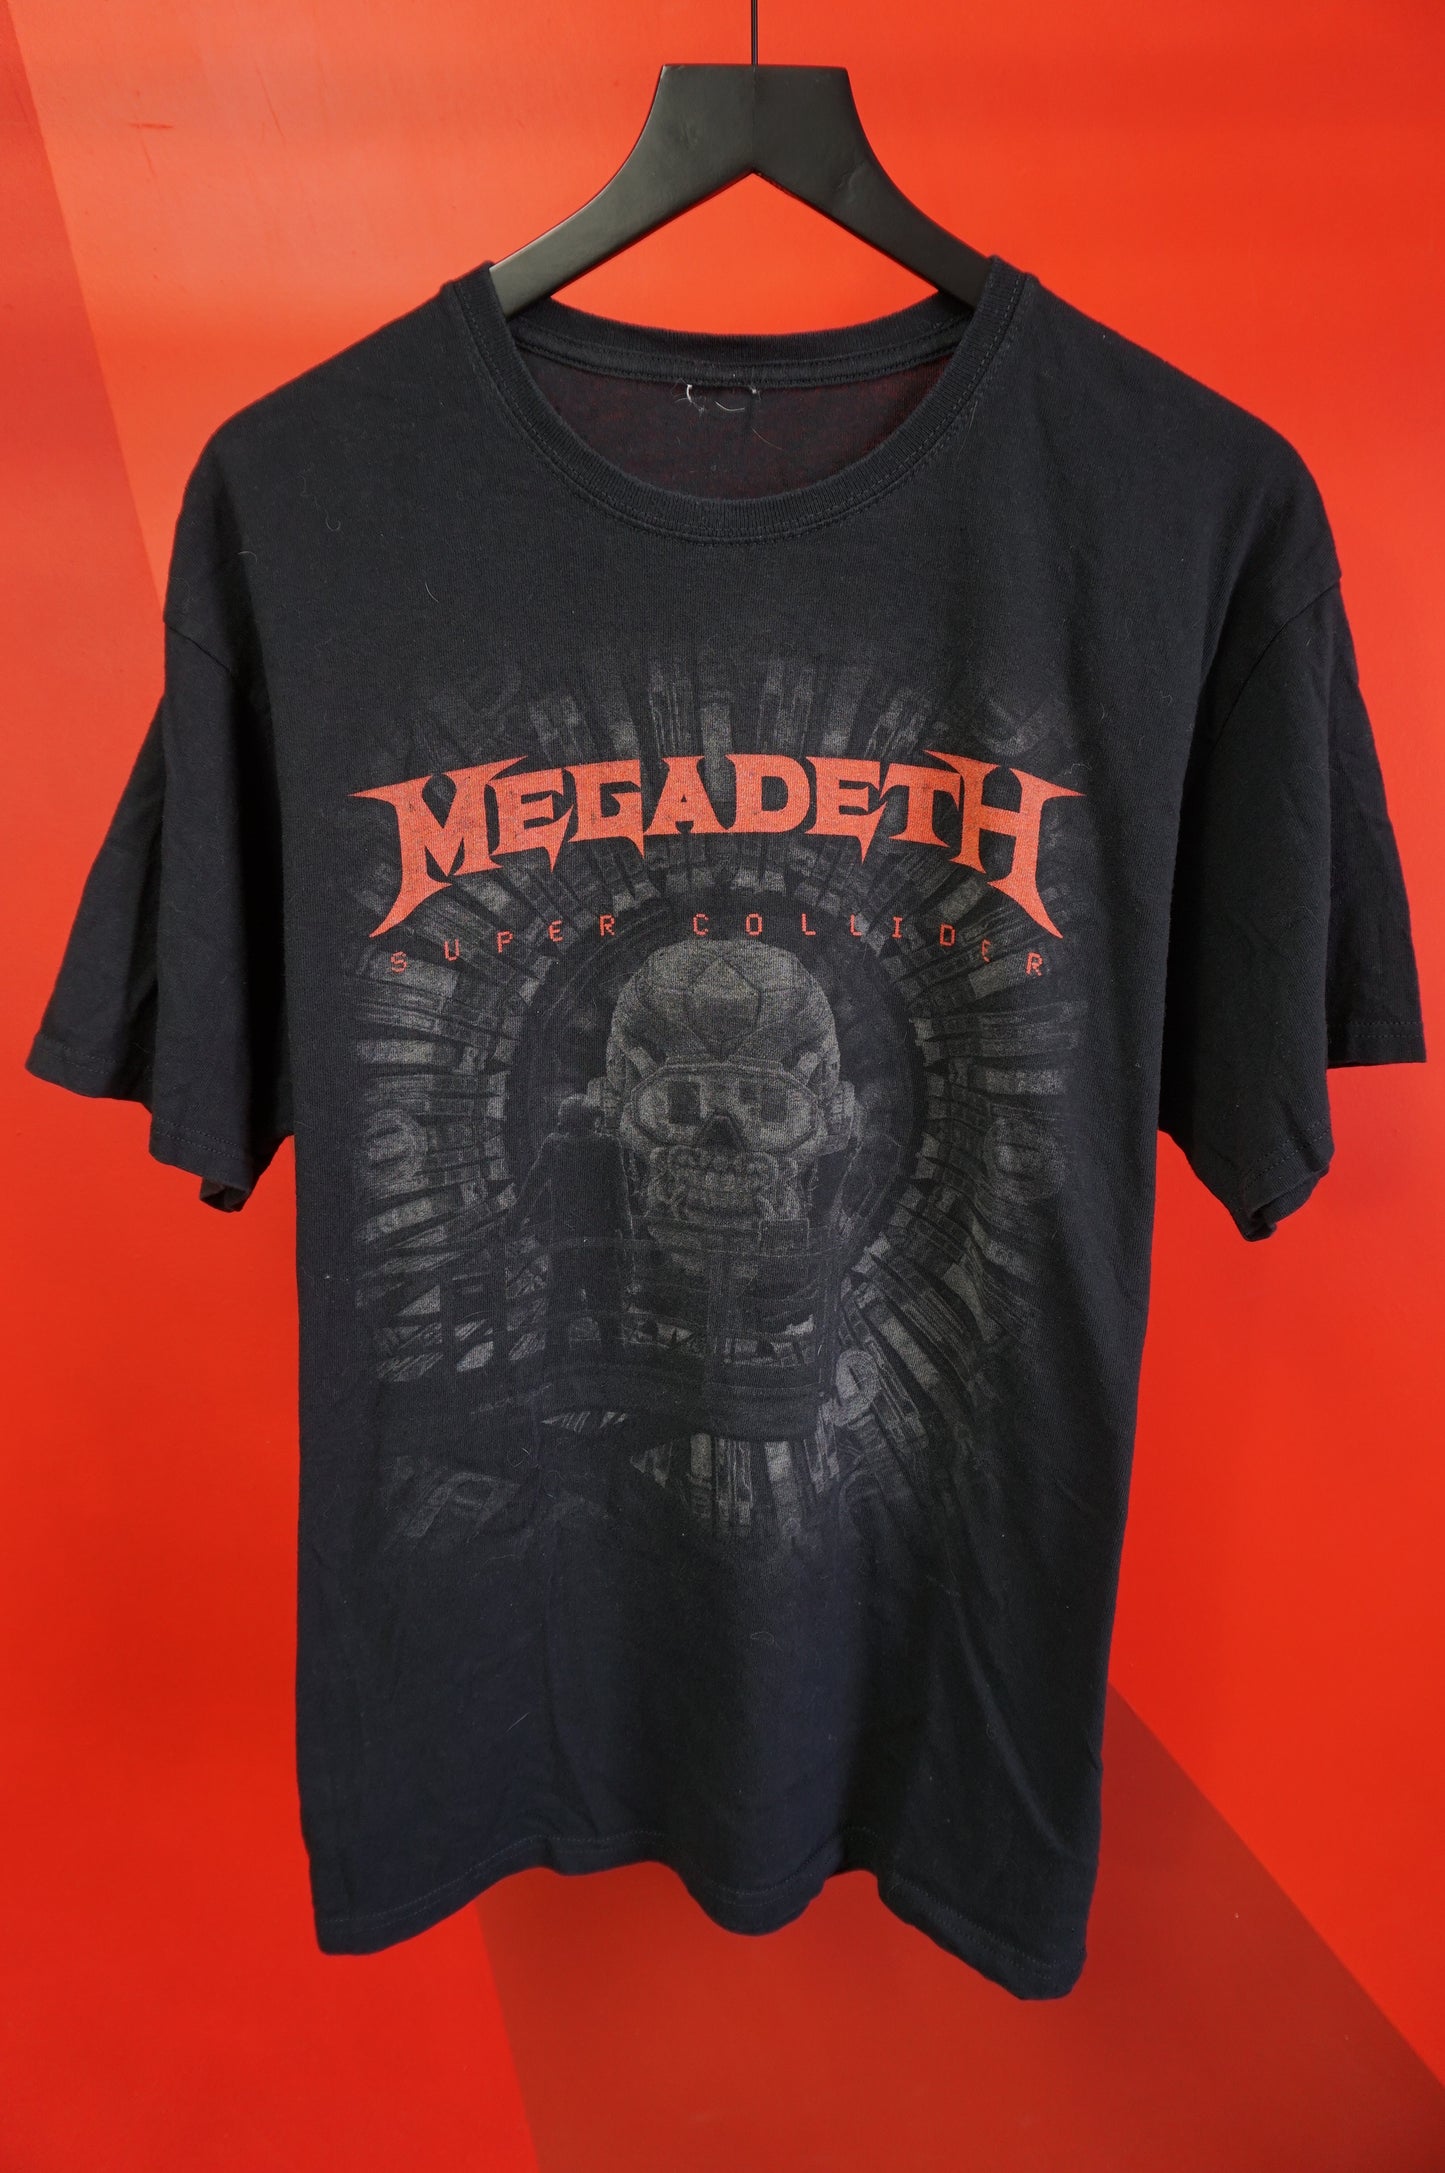 (XL) Megadeth Super Collider T-Shirt